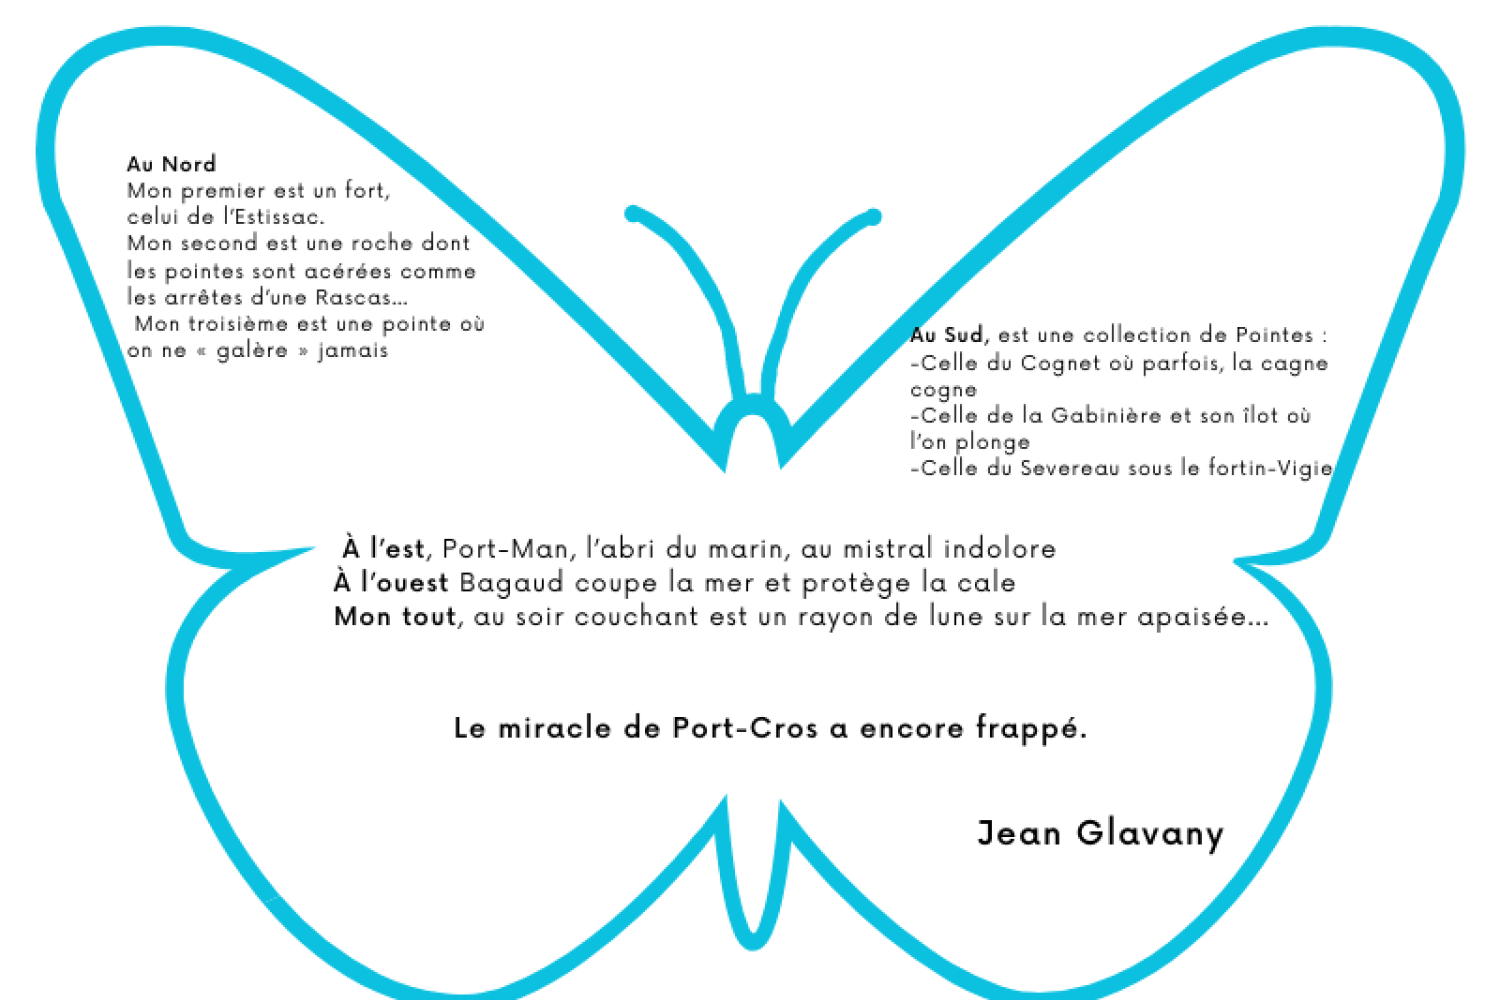 Jean Glavany